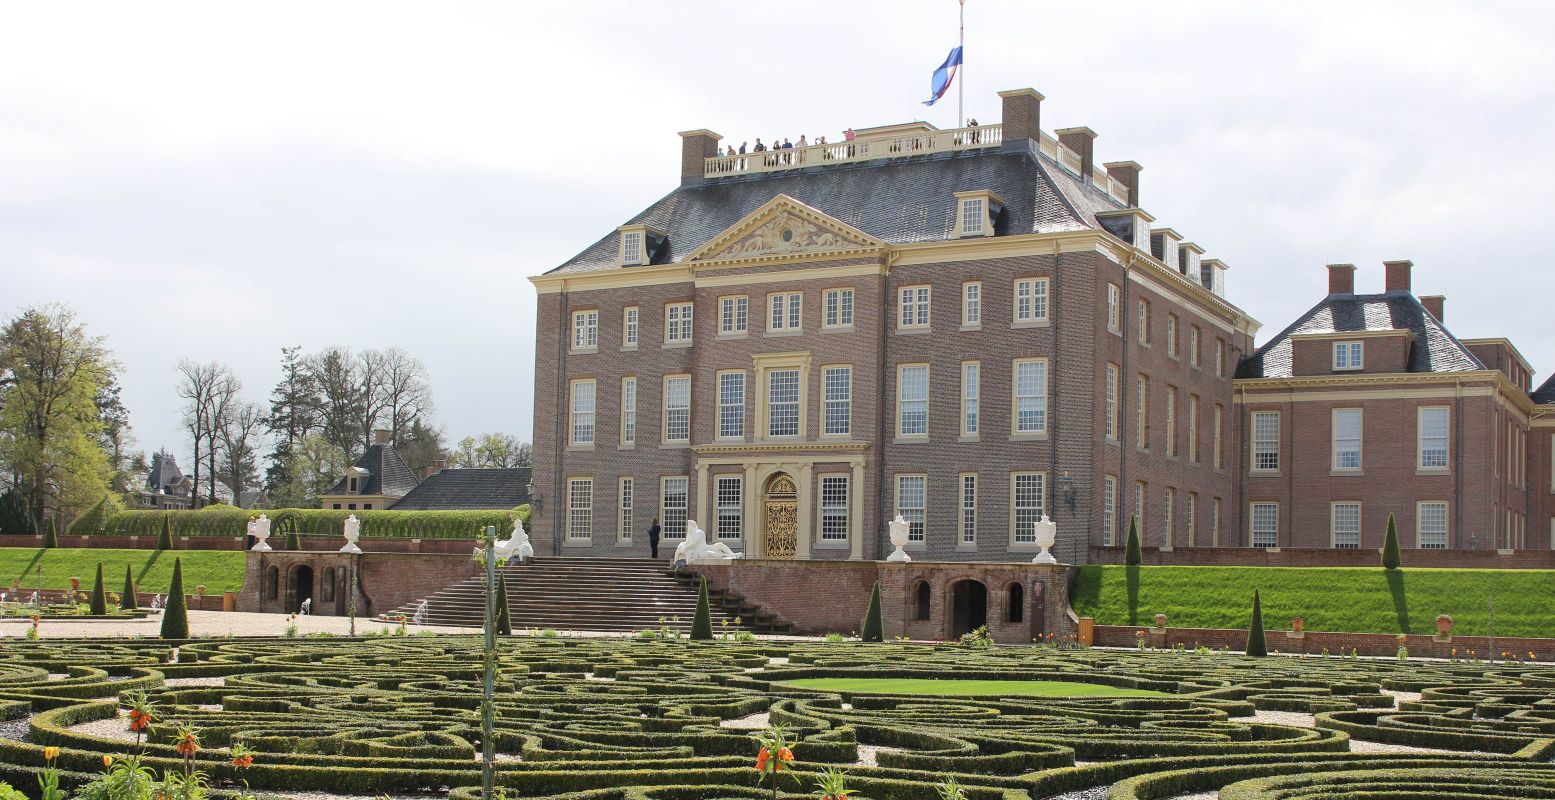 Verdwaal in het grootse paleis met de prachtige tuinen. Foto: DagjeWeg.NL